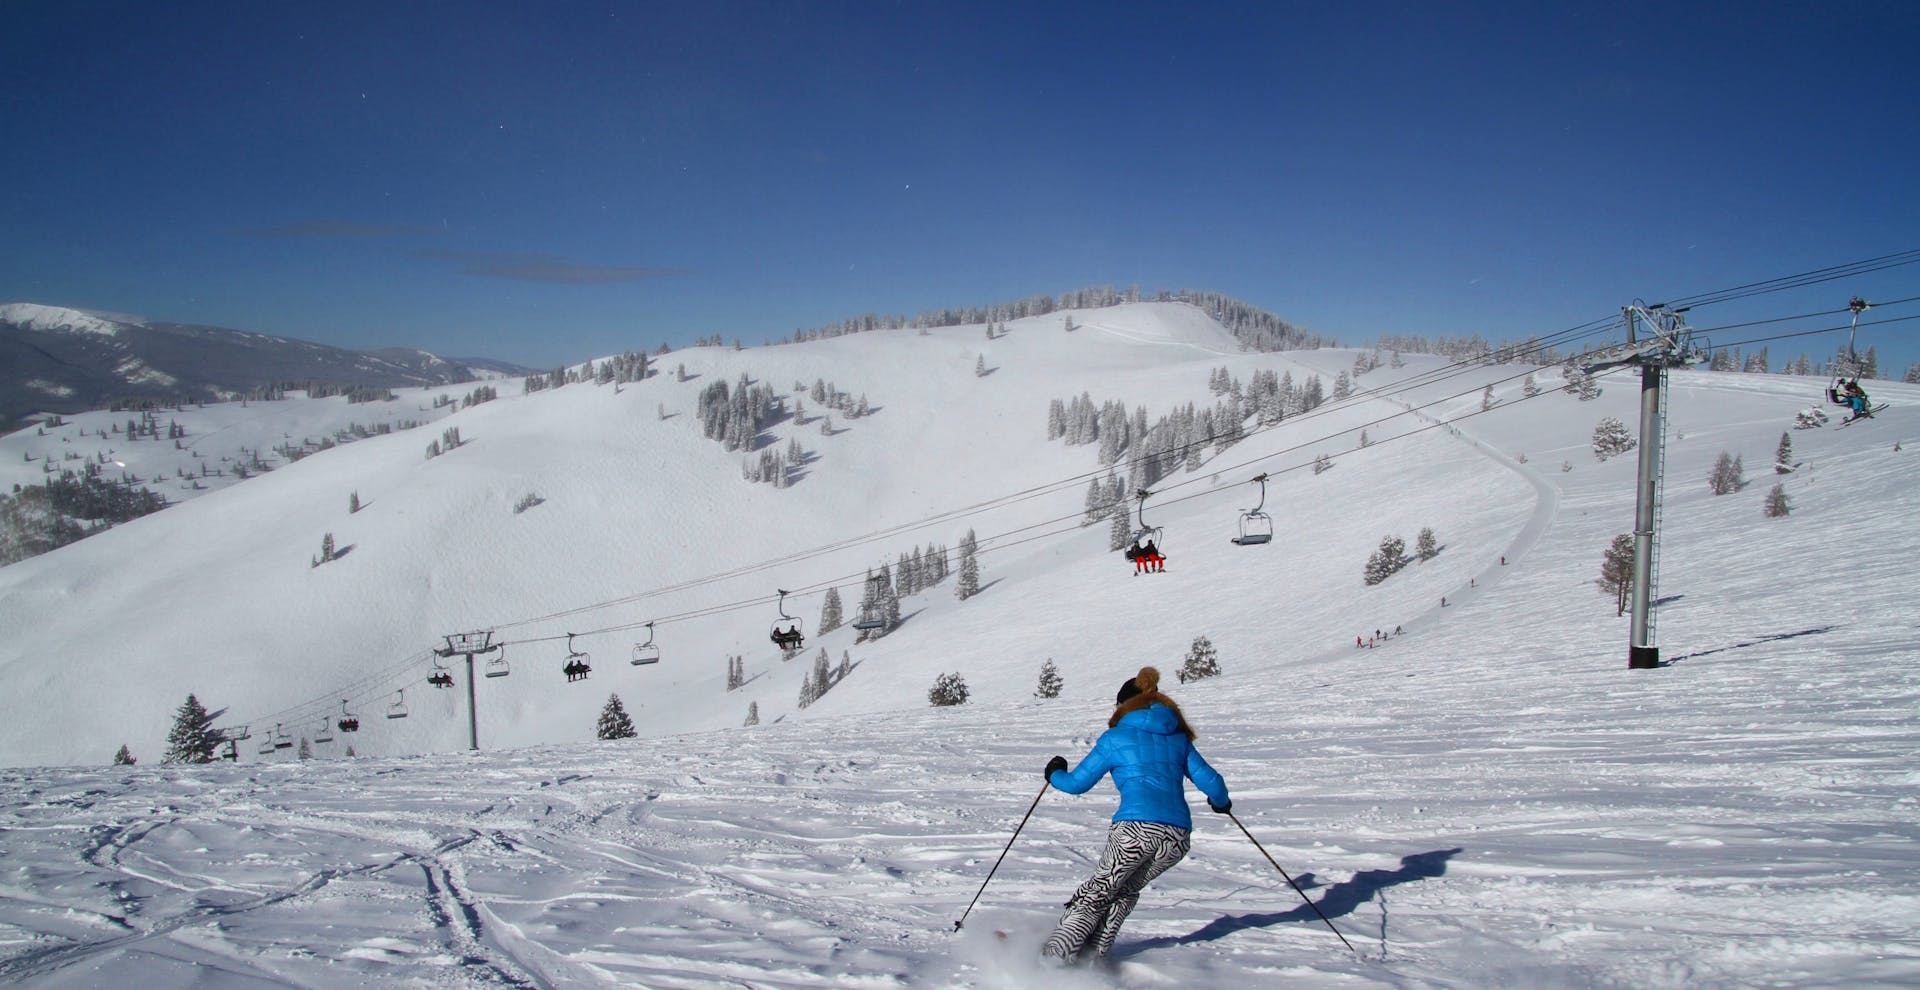 Skiing in Vail Ski Resort